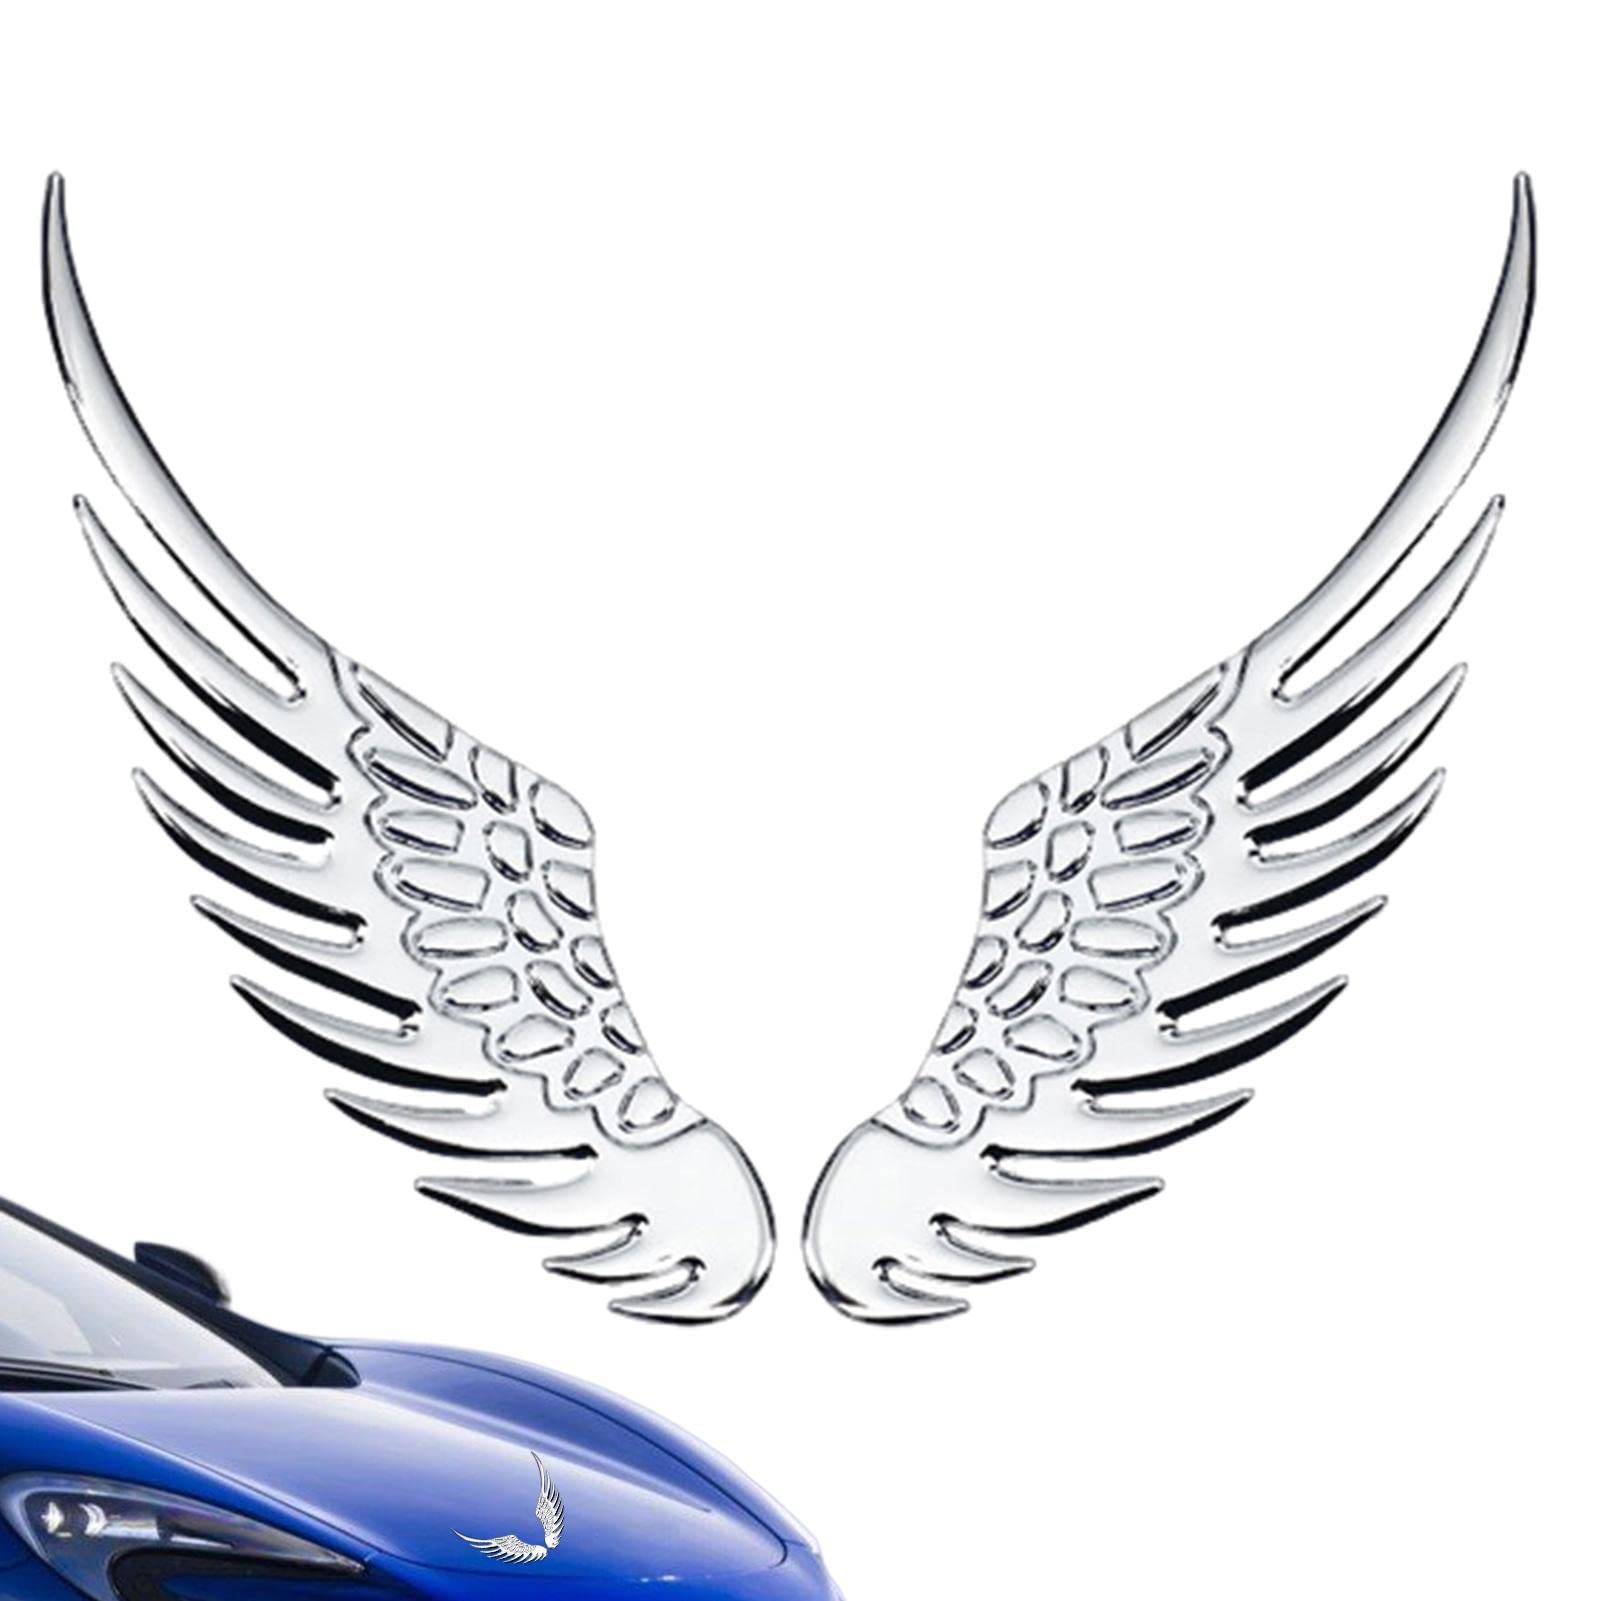 Adlerflügel Aufkleber für Auto | 3D-Metallaufkleber, Selbstklebende Automobil-Hawk-Flügel-Embleme - Stilvolles Autozubehör, Adlerflügel-Dekoration aus Metall für Laptop, Computer, SUVs, Zorq von ZORQ